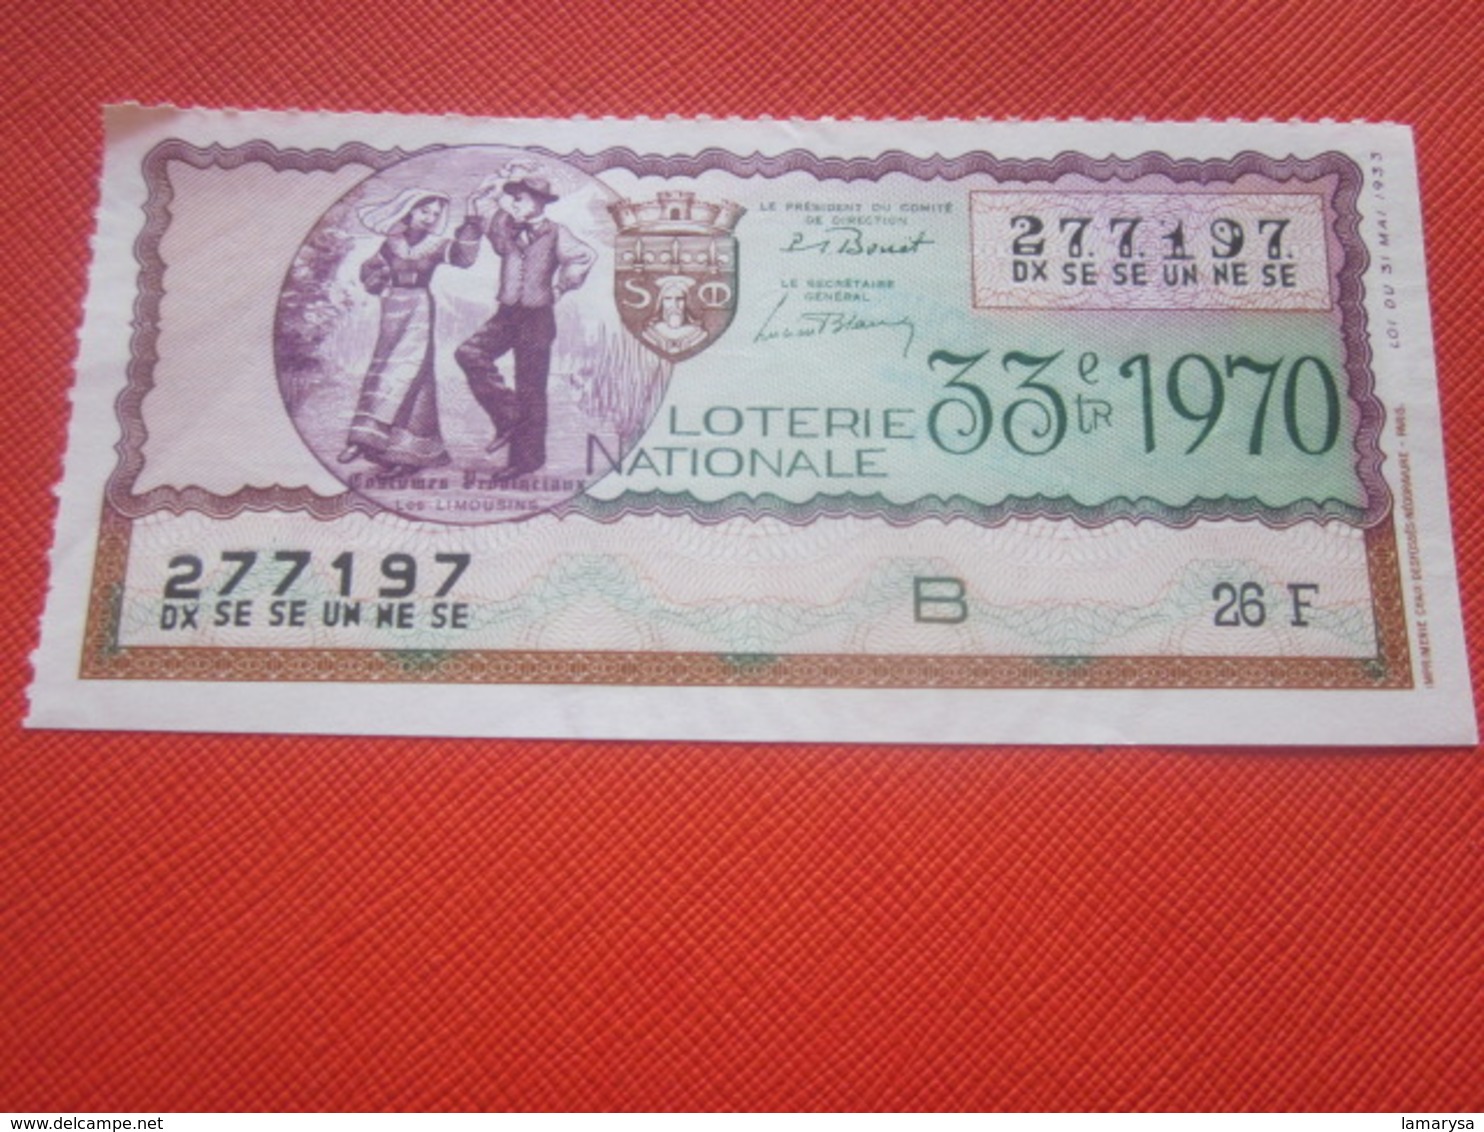 1970-LES LIMOUSINS-COSTUMES PROVINCIAUX- - Billet De La Loterie Nationale- IMPRIMÉE TAILLE DOUCE - Lottery Tickets